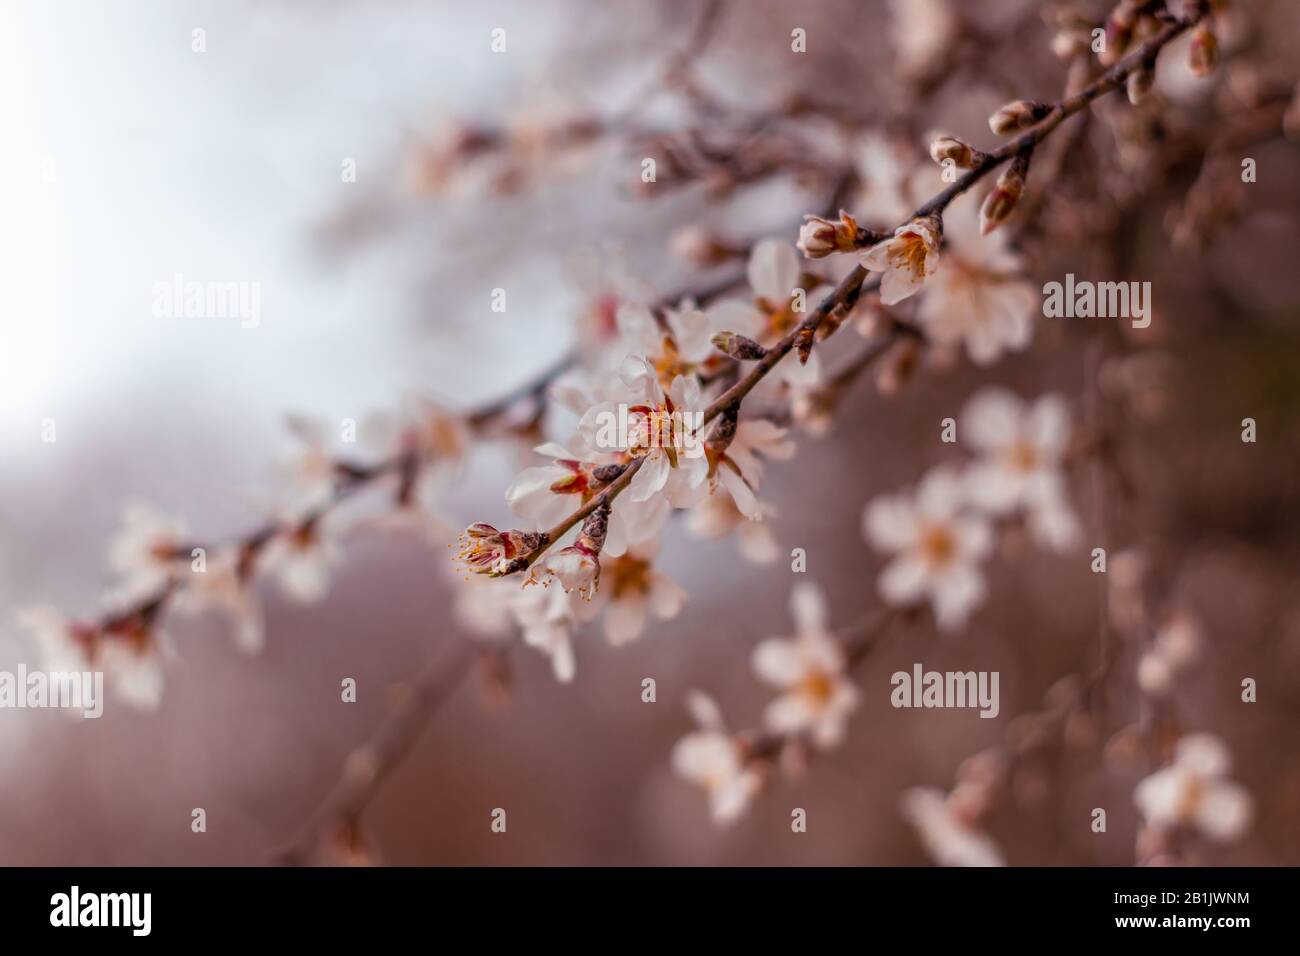 Ramas del almendro, con flores de invierno en blanco y amarillo, sobre un  fondo blanco borroso de cielo nublado, reserva sataf, fores de jerusalén  Fotografía de stock - Alamy